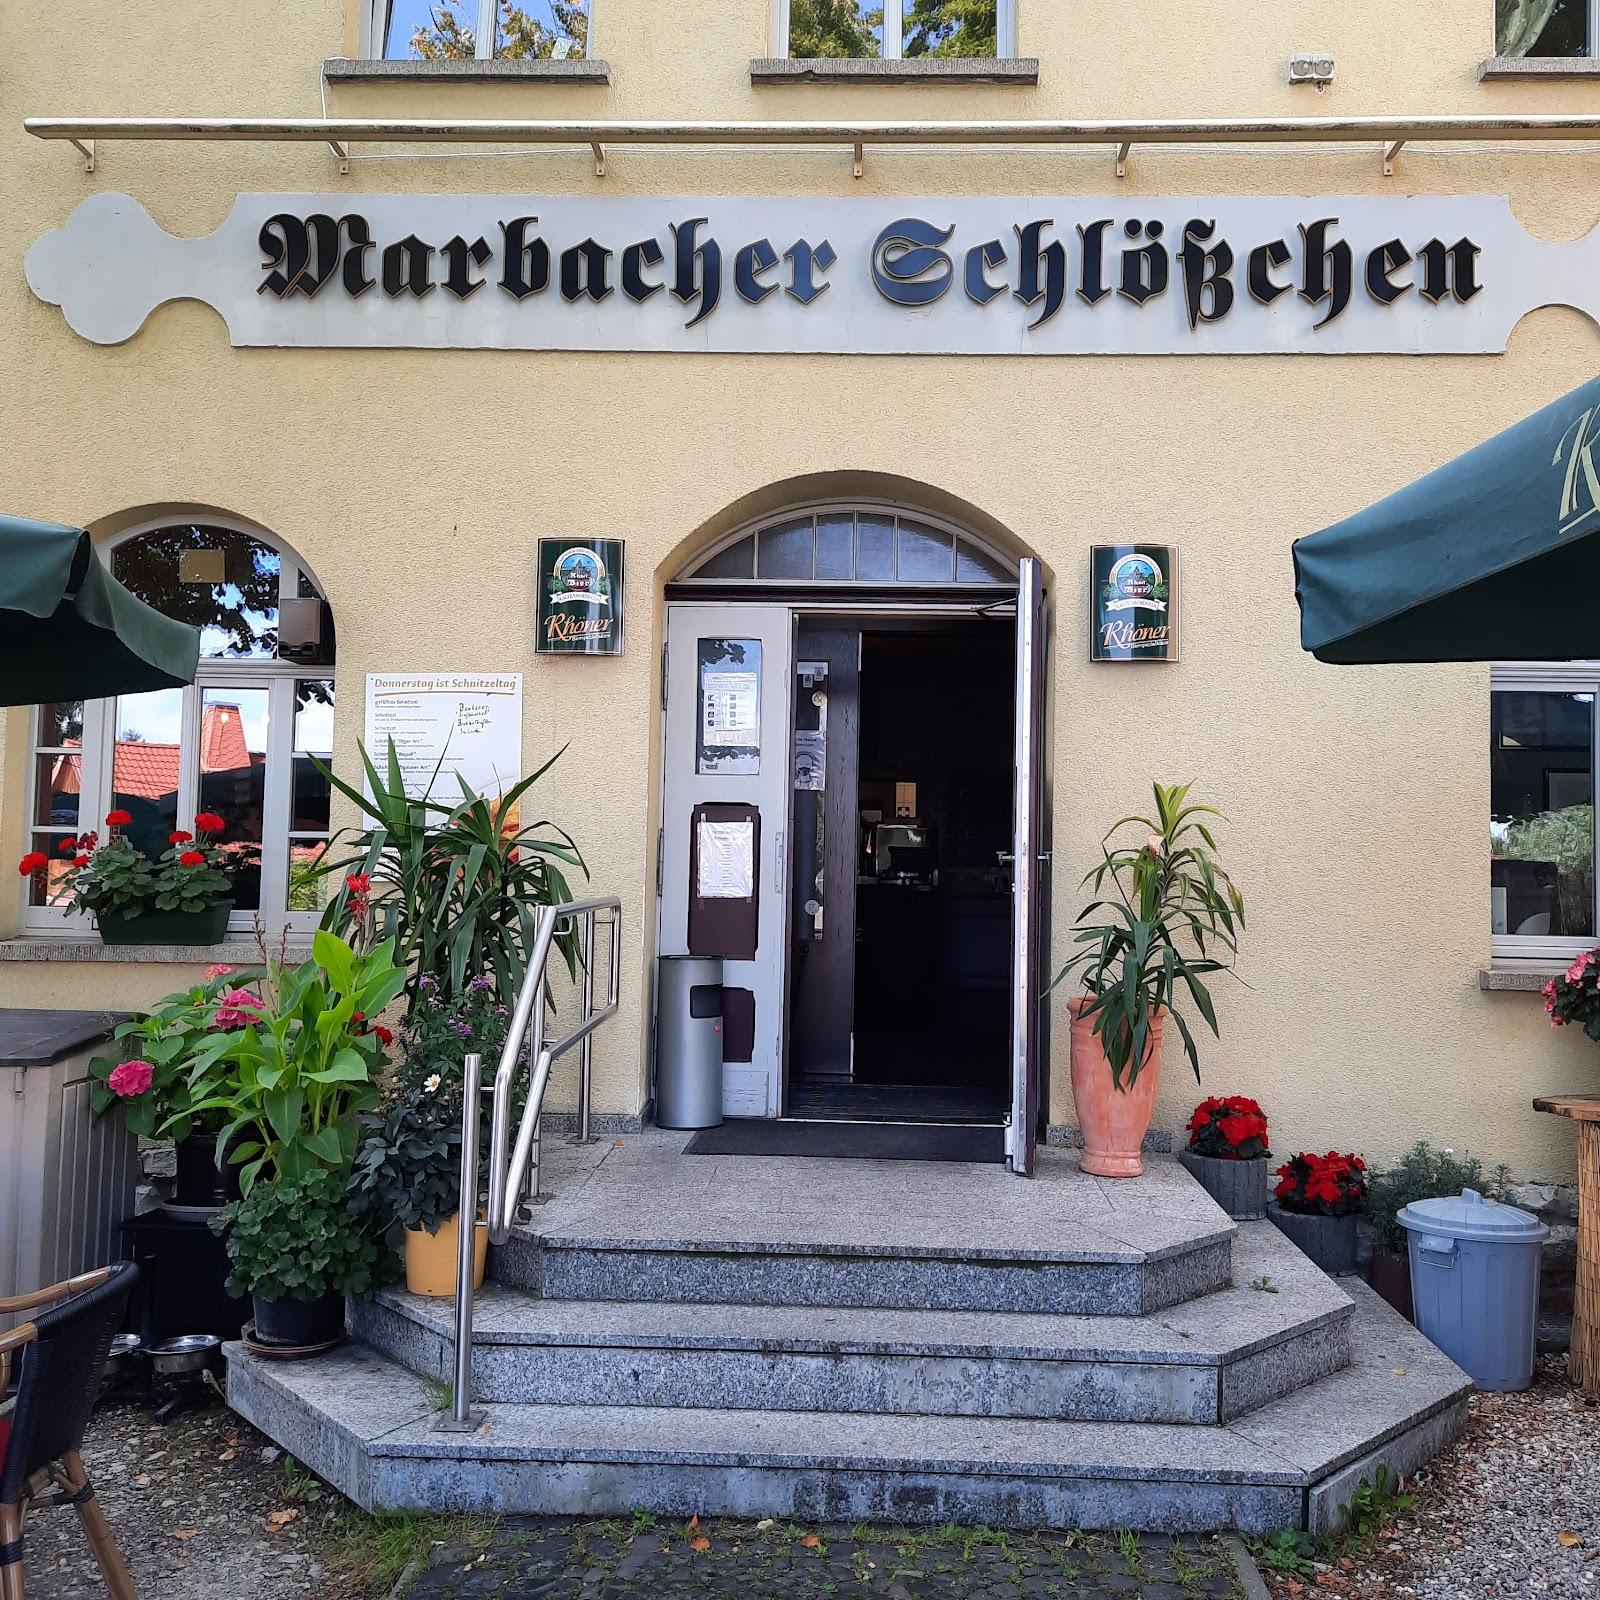 Restaurant "Restaurant Marbacher Schlößchen" in Erfurt